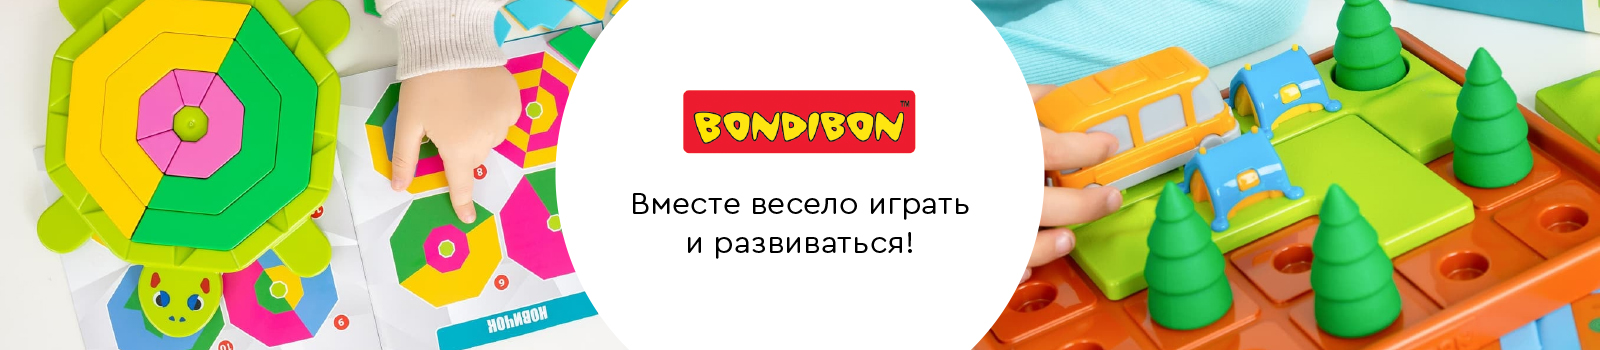 Bondibon: вместе весело играть и развиваться!